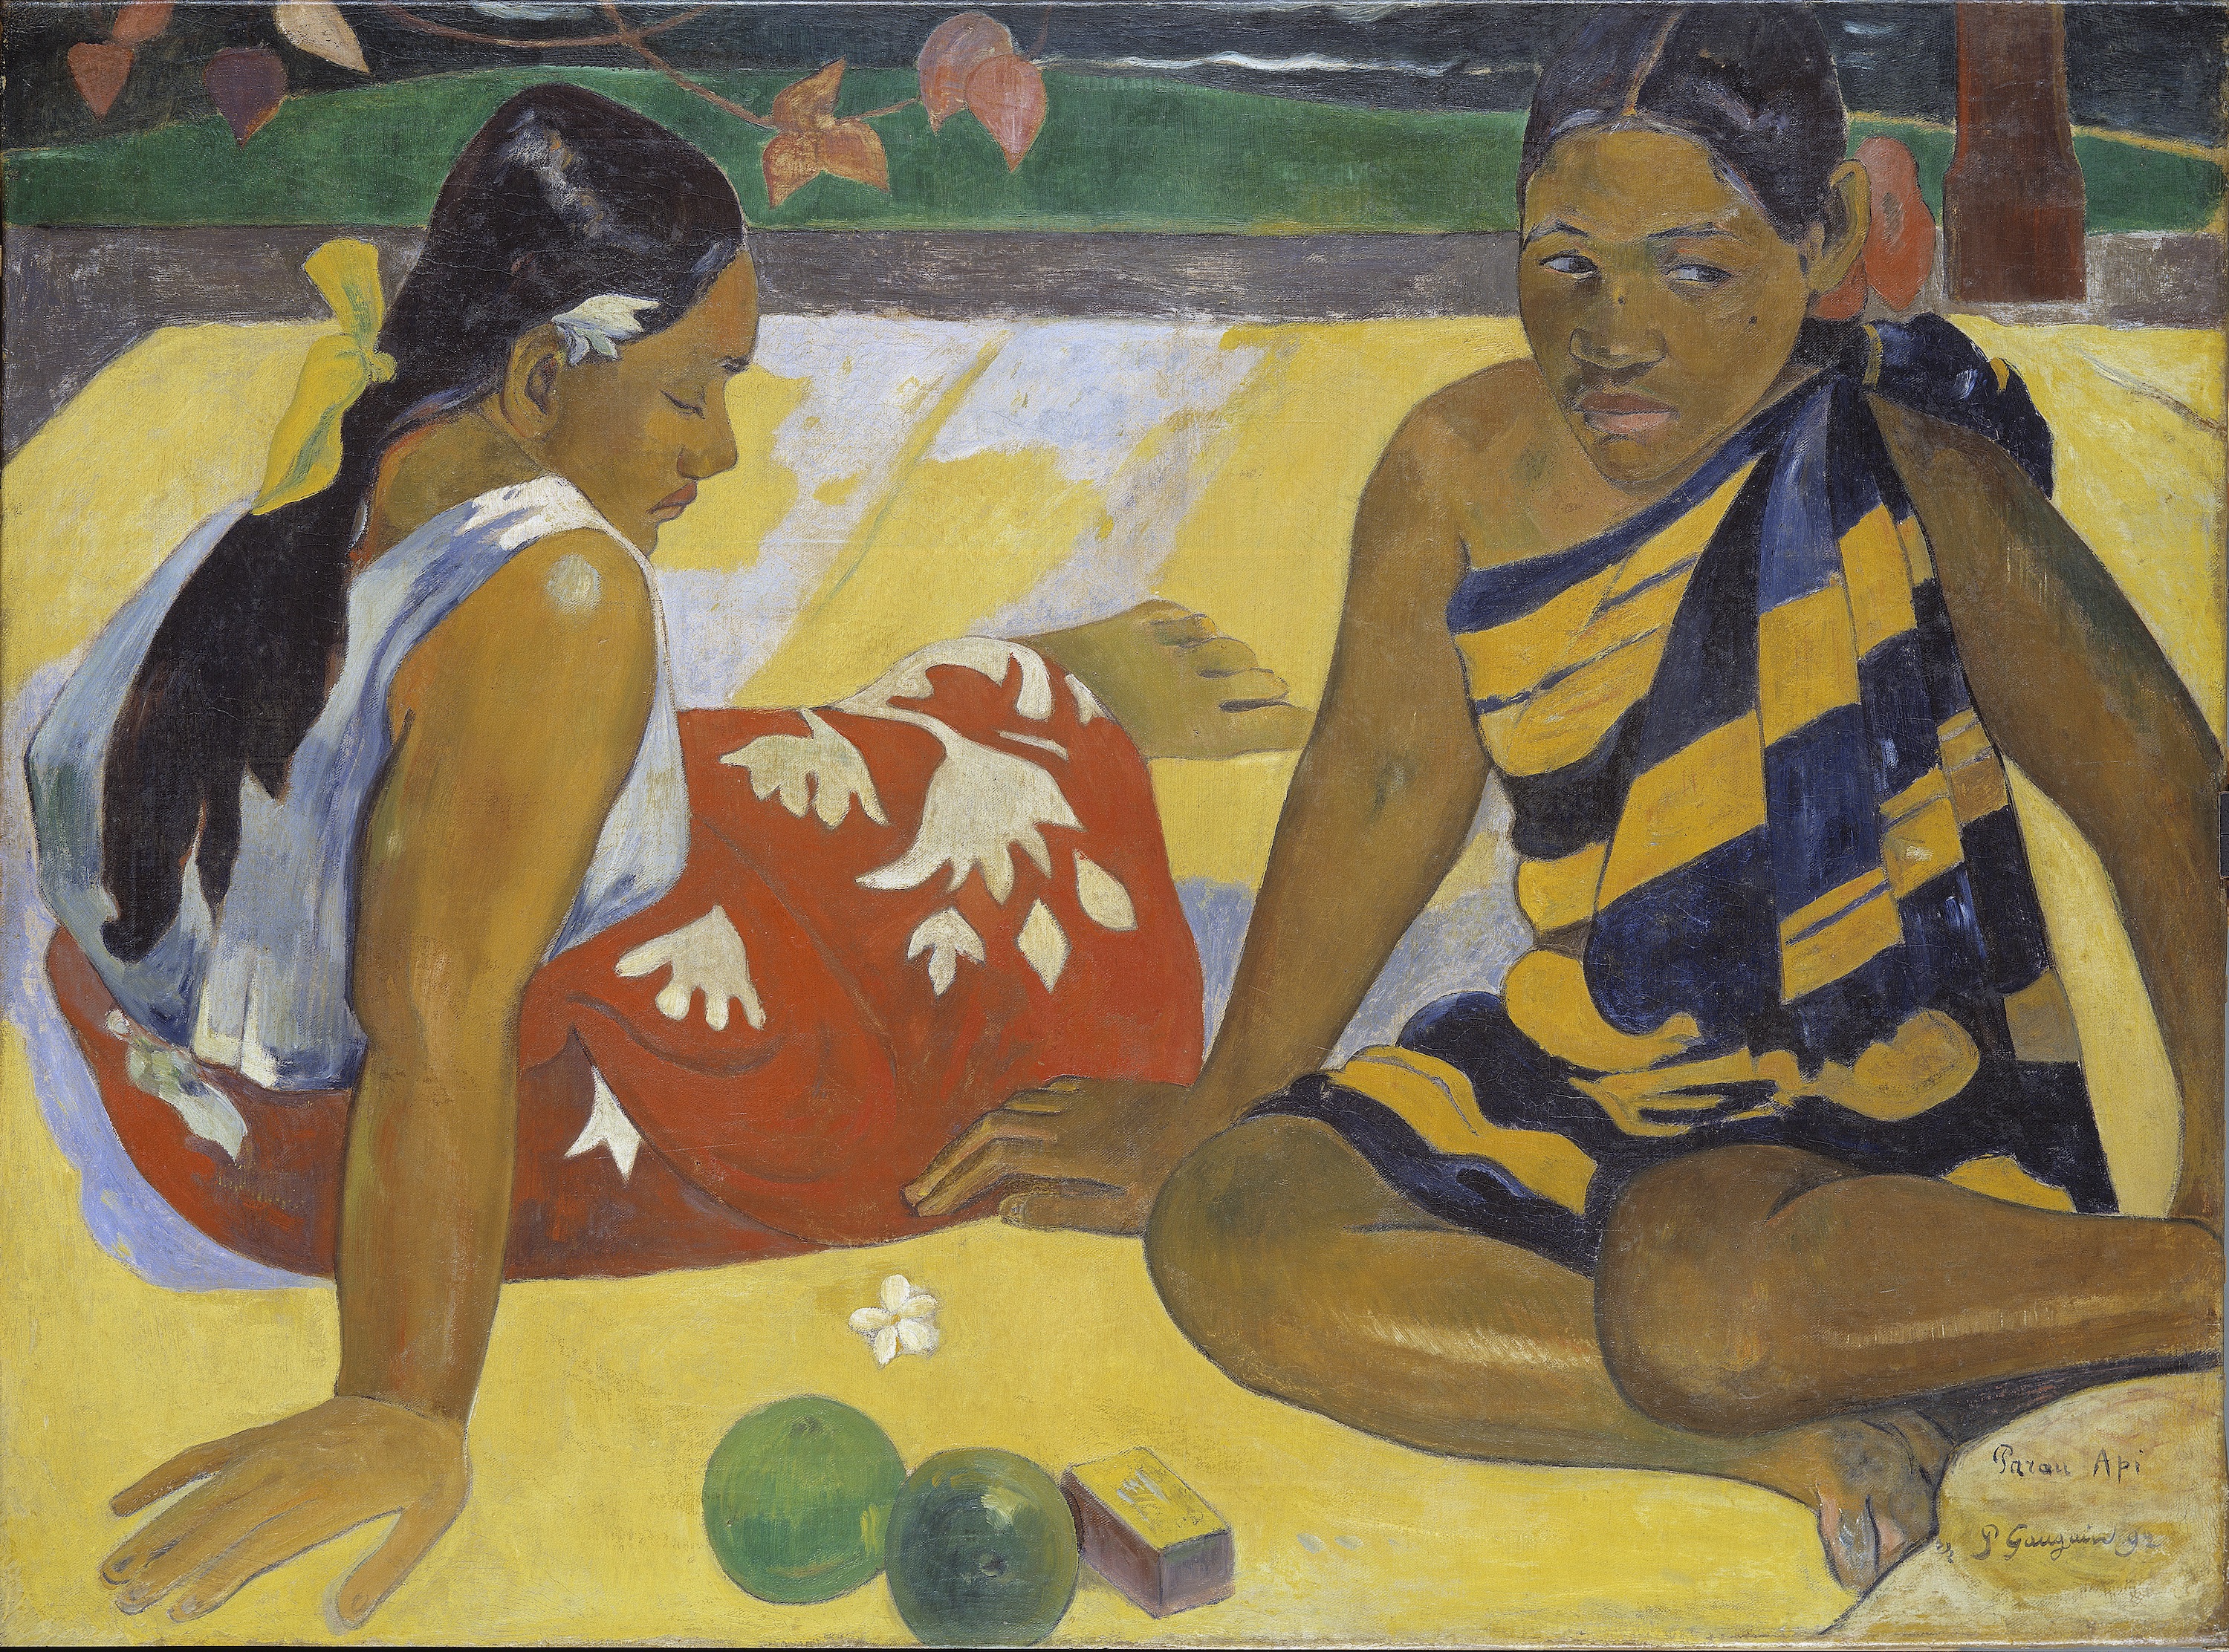 Parau Api. Que notícias by Paul Gauguin - 1892 - 92 x 67 cm 